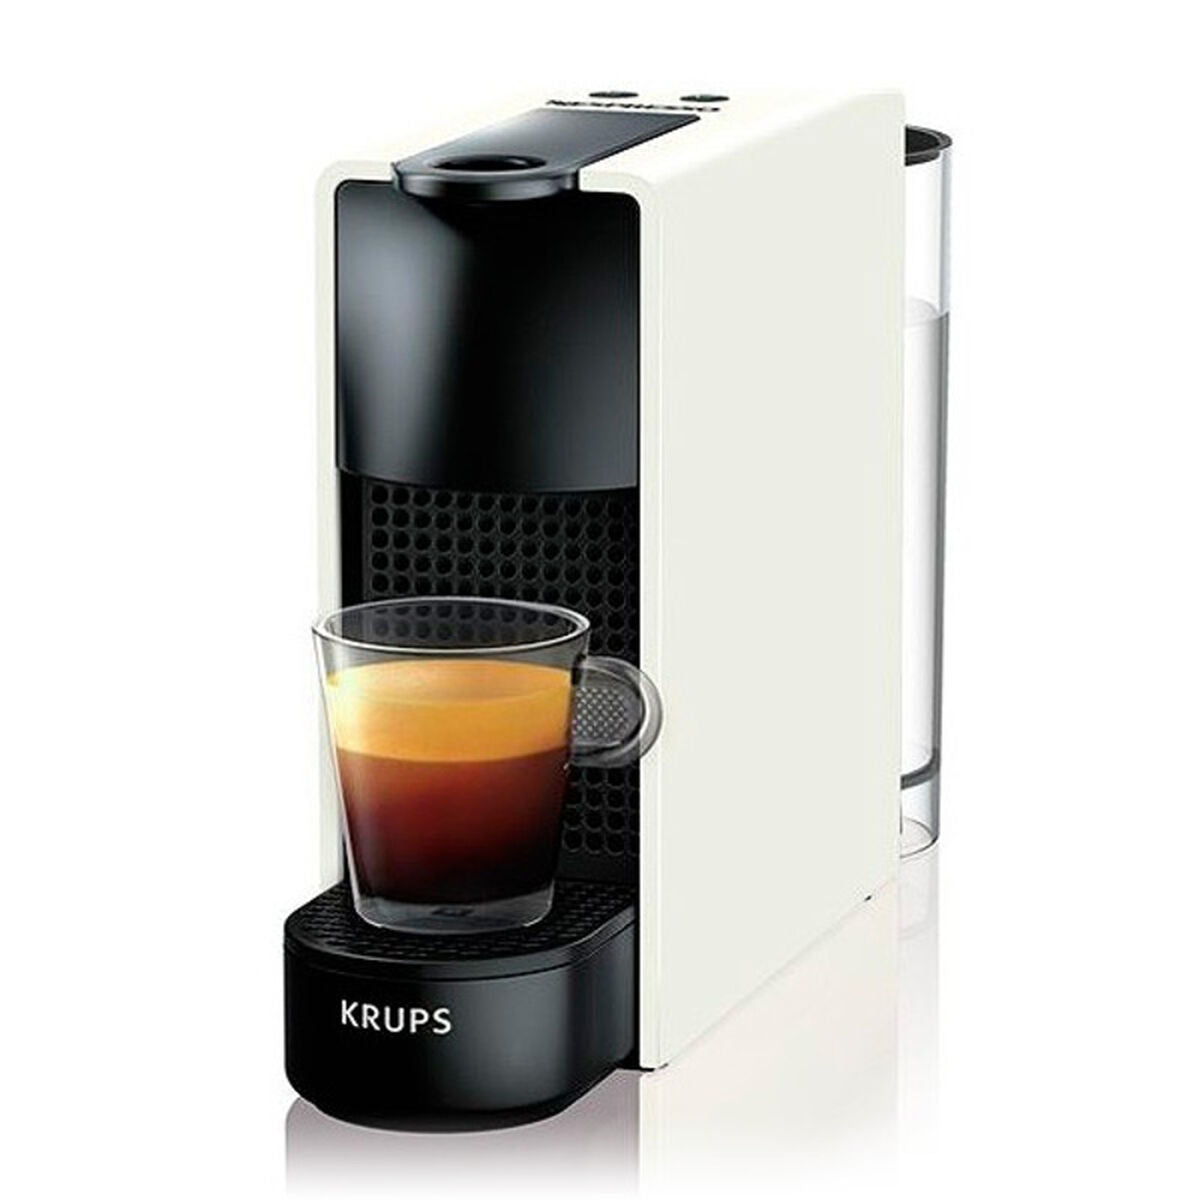 胶囊咖啡机krups XN1101 0,6 L 19 BAR 1300W